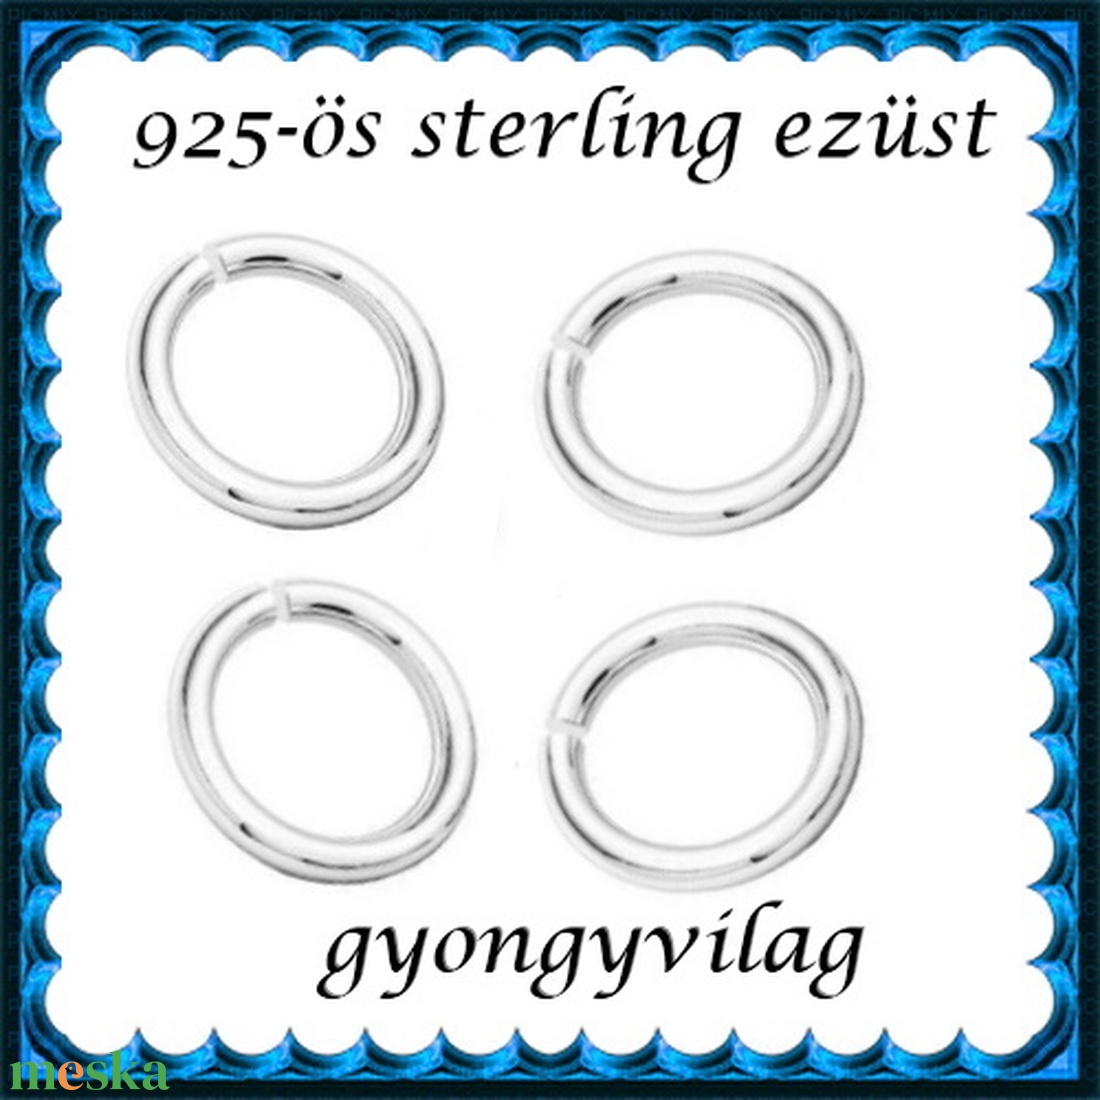 925-ös sterling ezüst ékszerkellék: karika nyitott ESZK NY 4x0,8mm 4db/csomag - gyöngy, ékszerkellék - egyéb alkatrész - Meska.hu